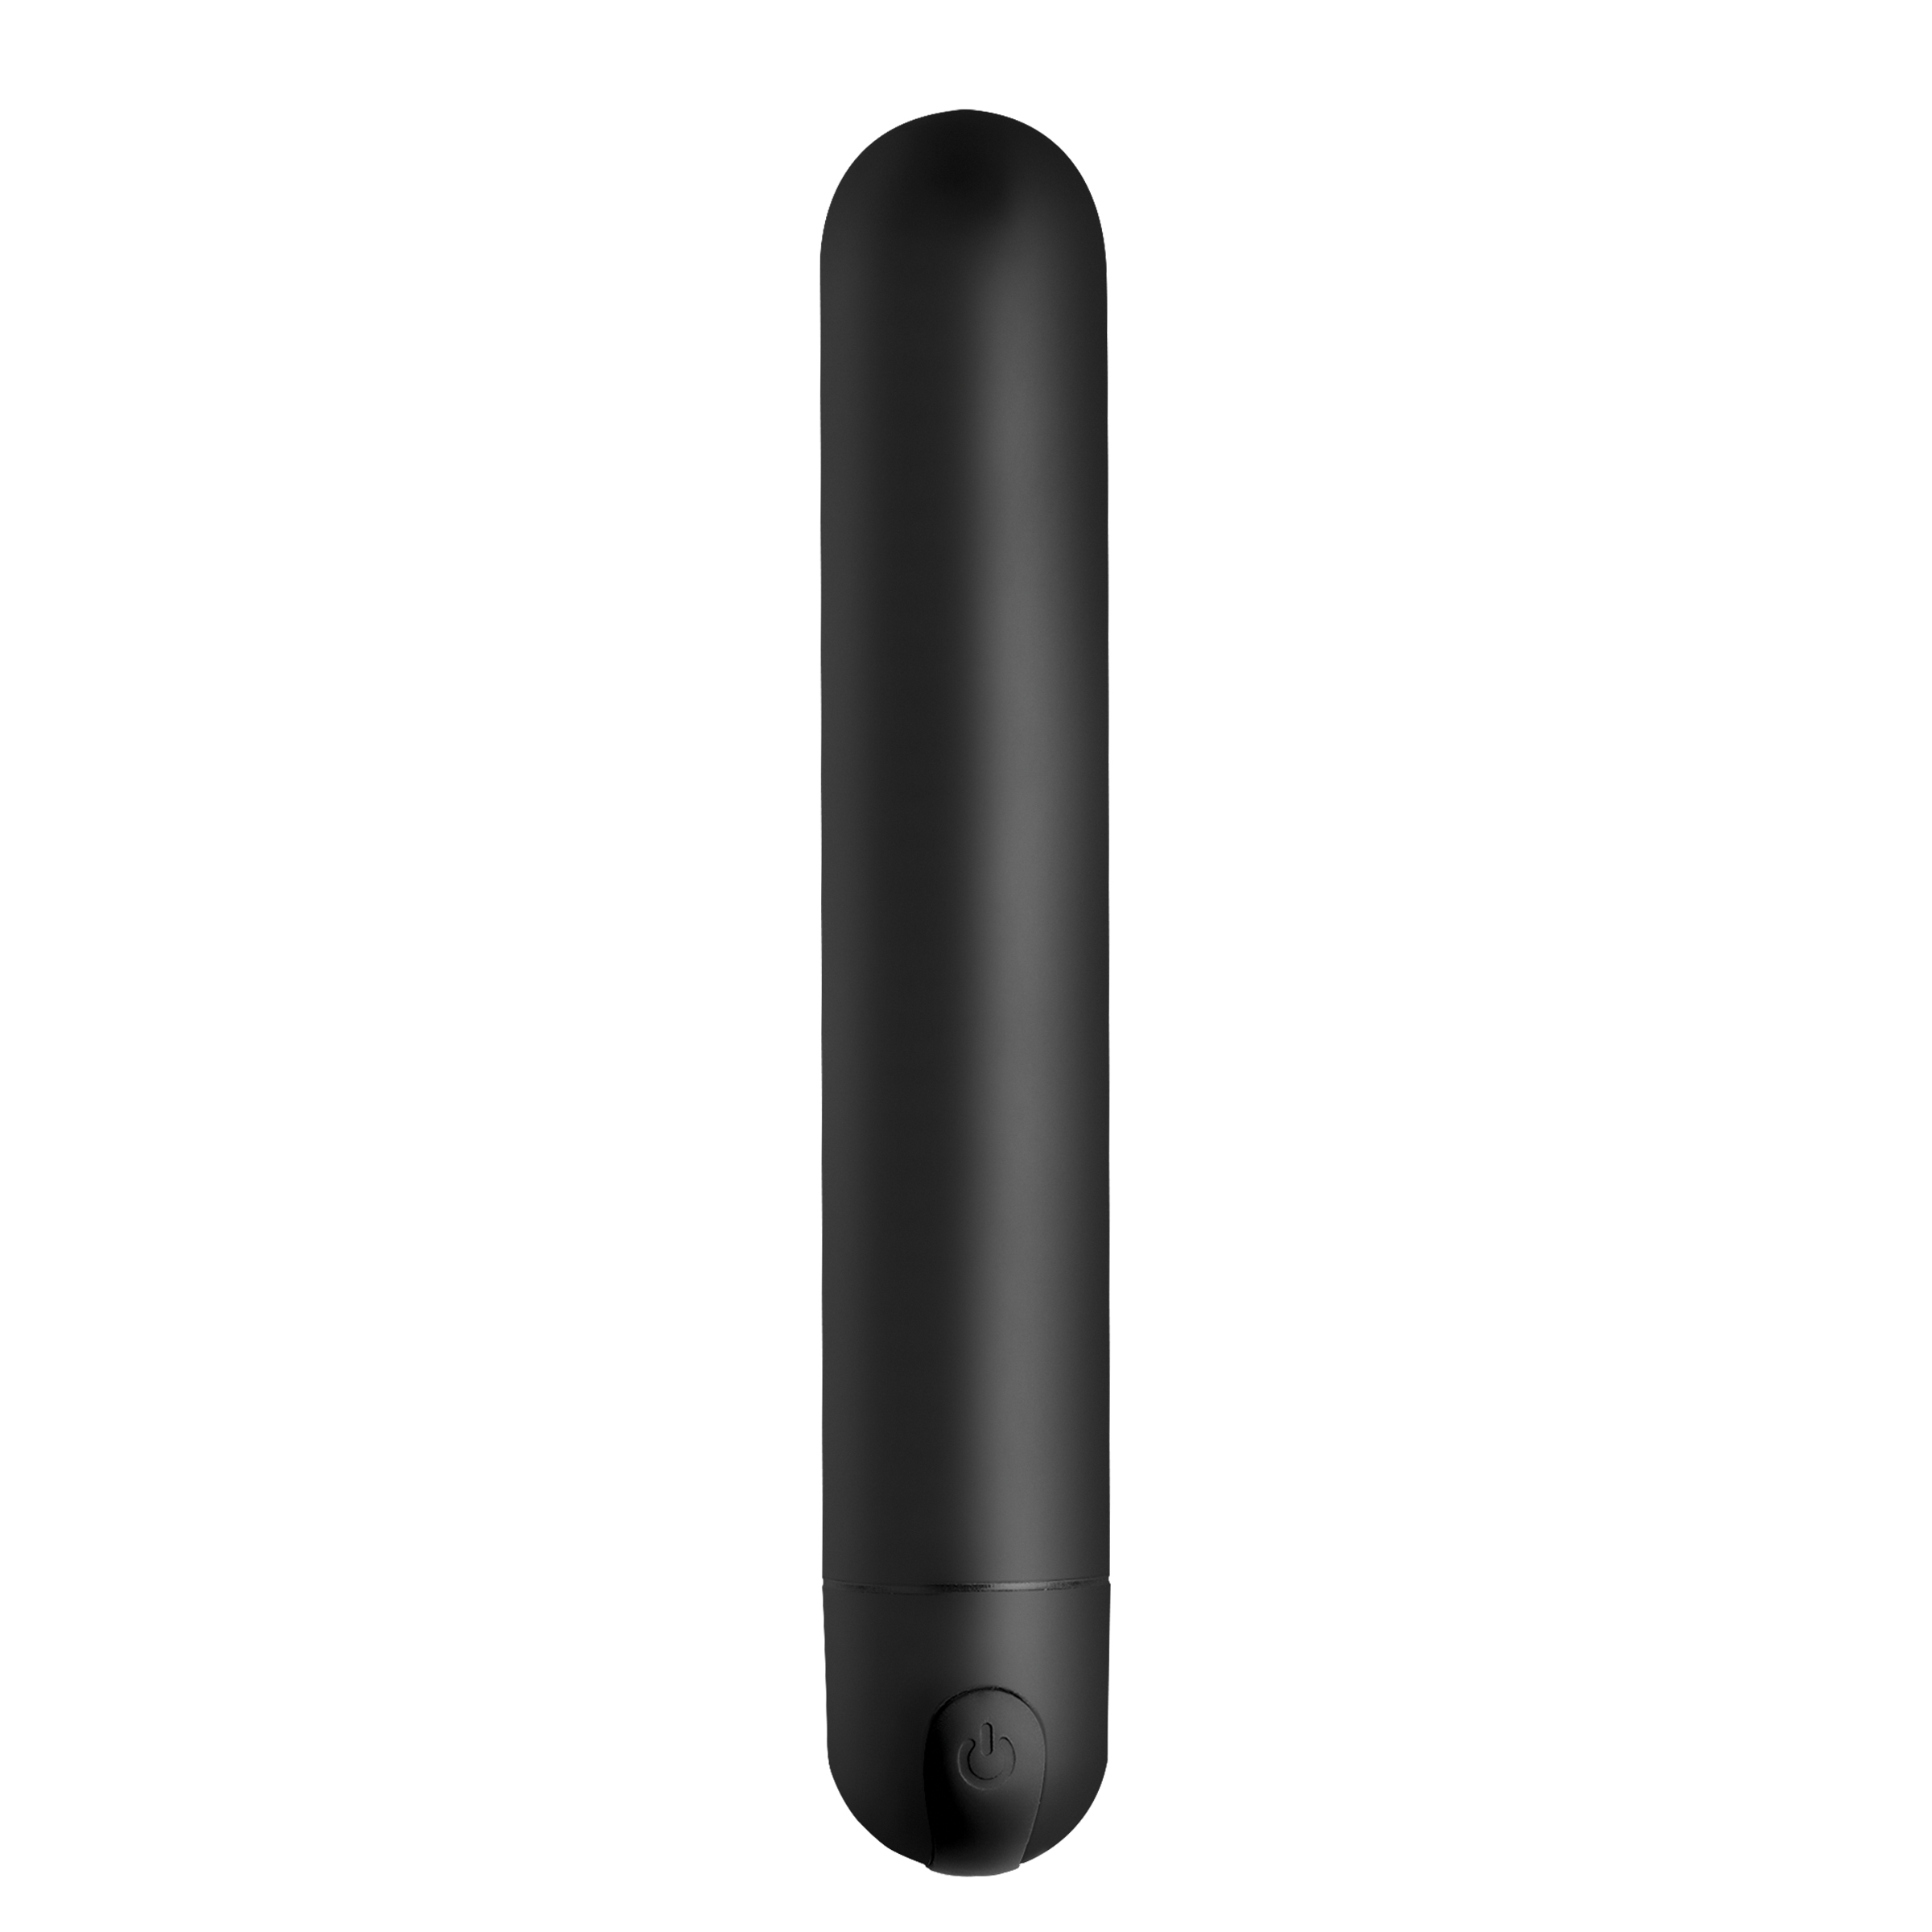 XL Bullet Vibrator – Black